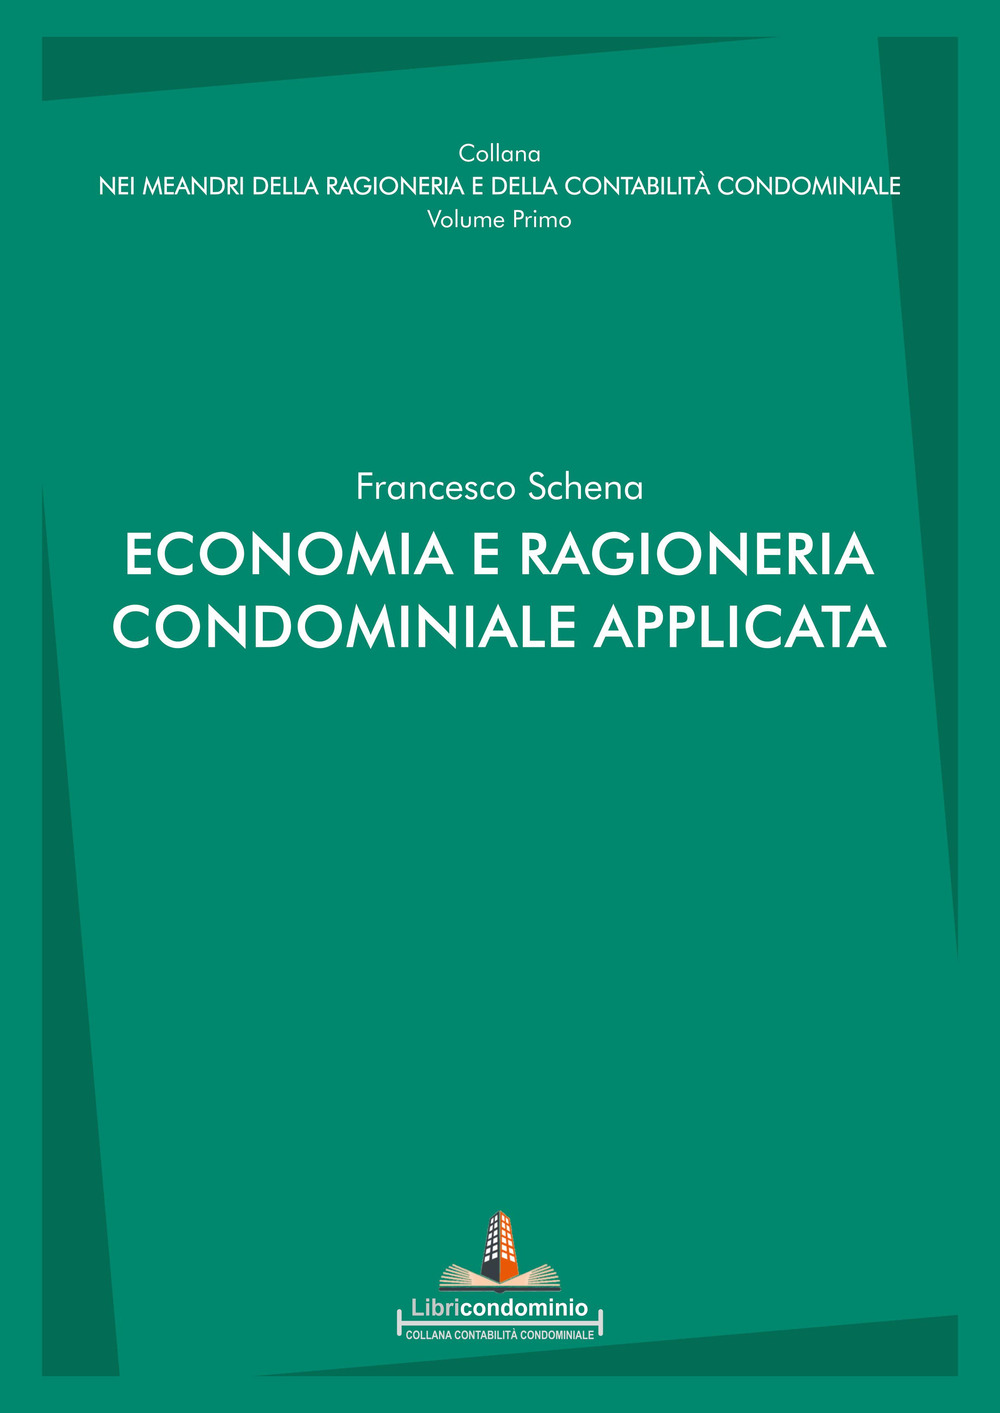 Libri Francesco Schena - Economia E Ragioneria Condominiale Applicata NUOVO SIGILLATO, EDIZIONE DEL 10/12/2021 SUBITO DISPONIBILE